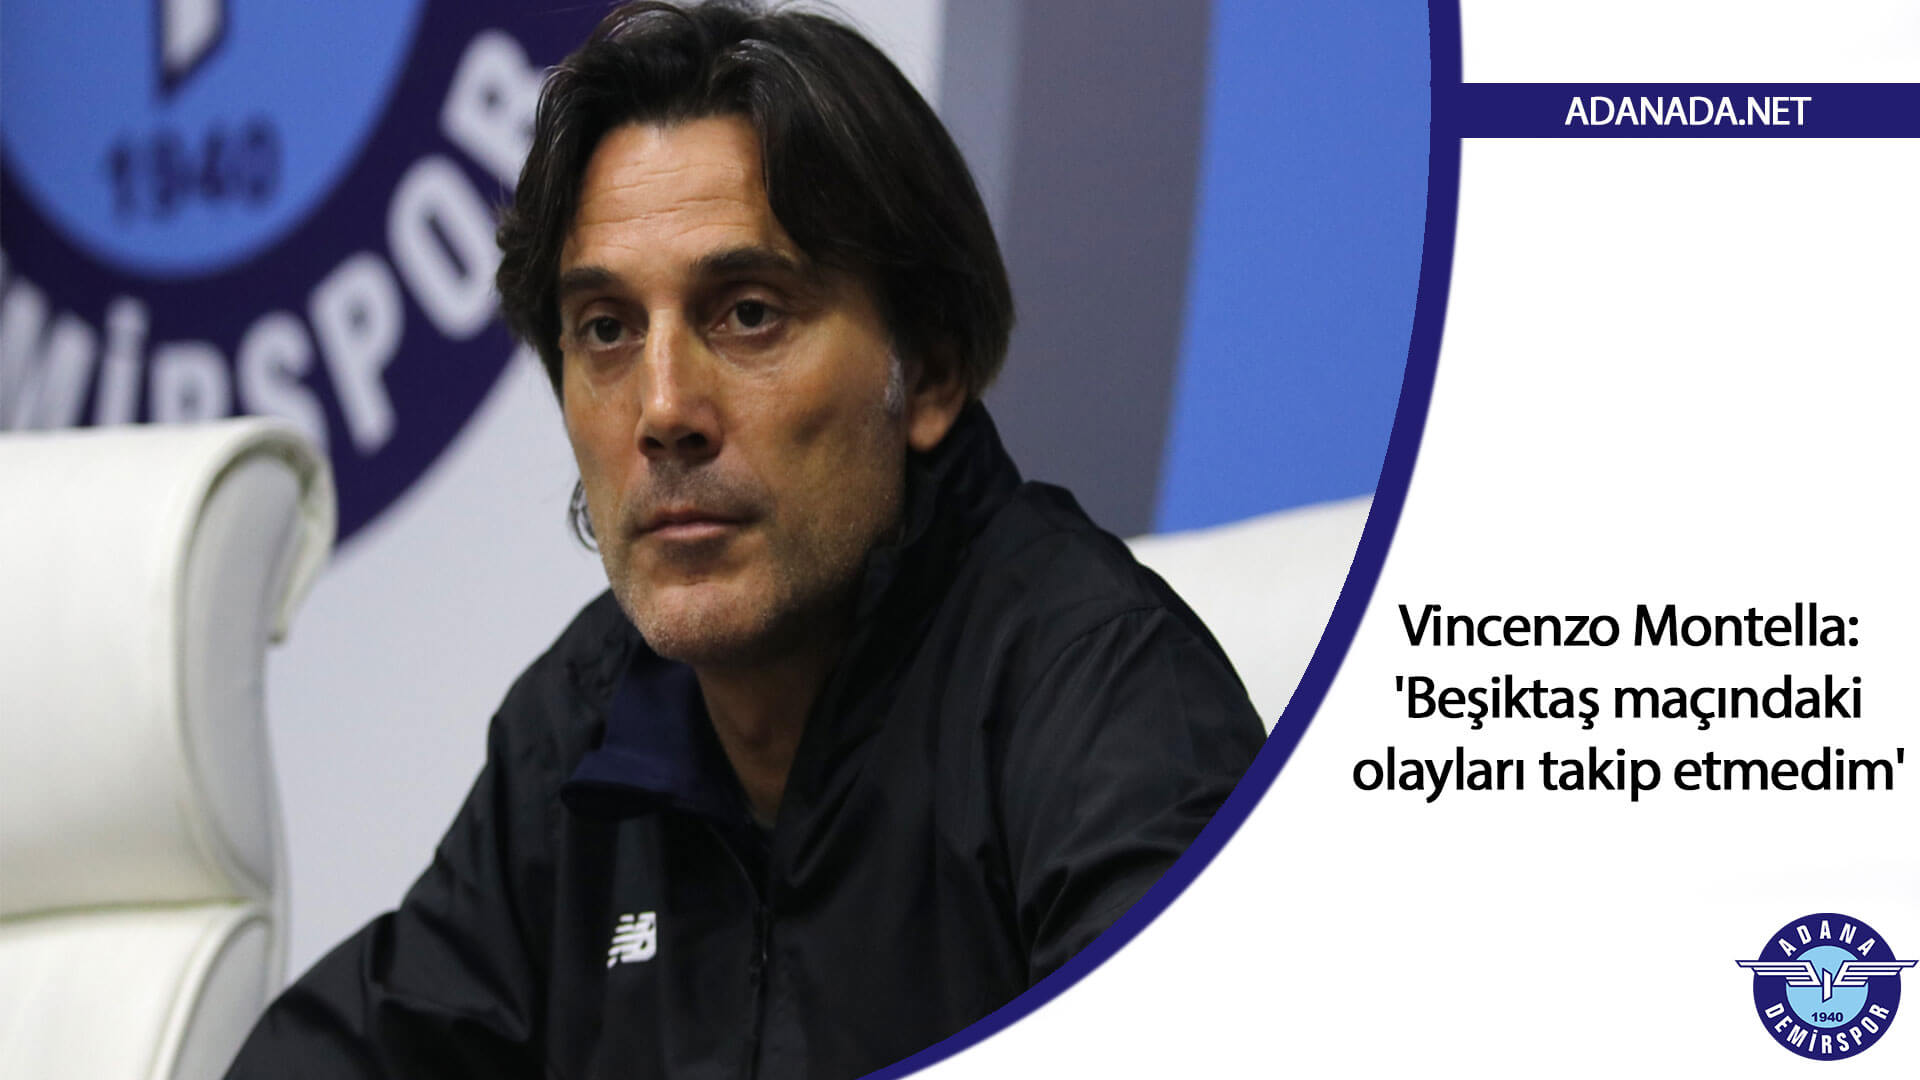 Vincenzo Montella: ‘Beşiktaş maçındaki olayları çok takip etmedim, okumadım’